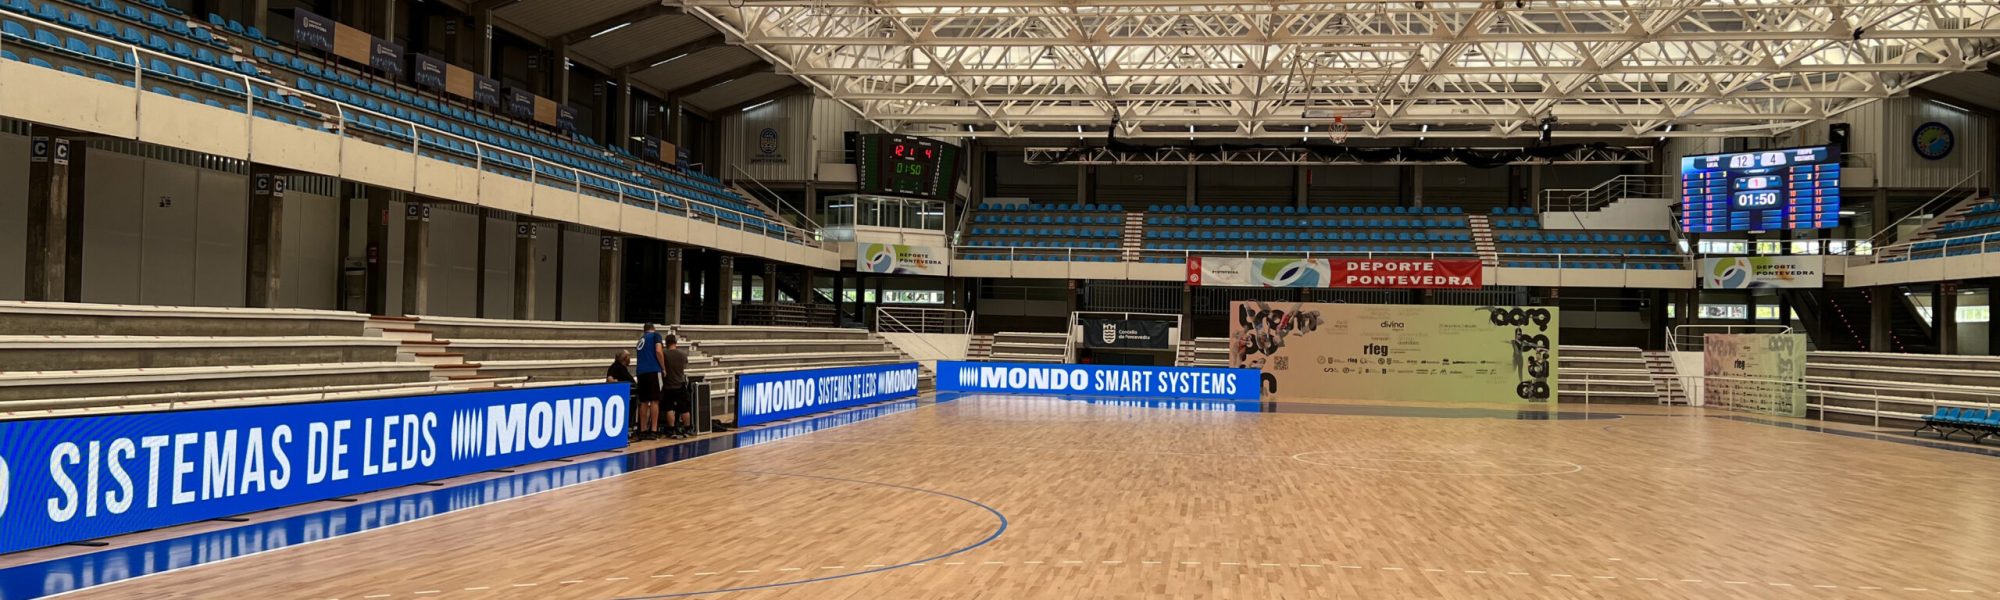 Pavillón Municipal dos Deportes de Pontevedra, equipado con la tecnología Mondo Smart Systems